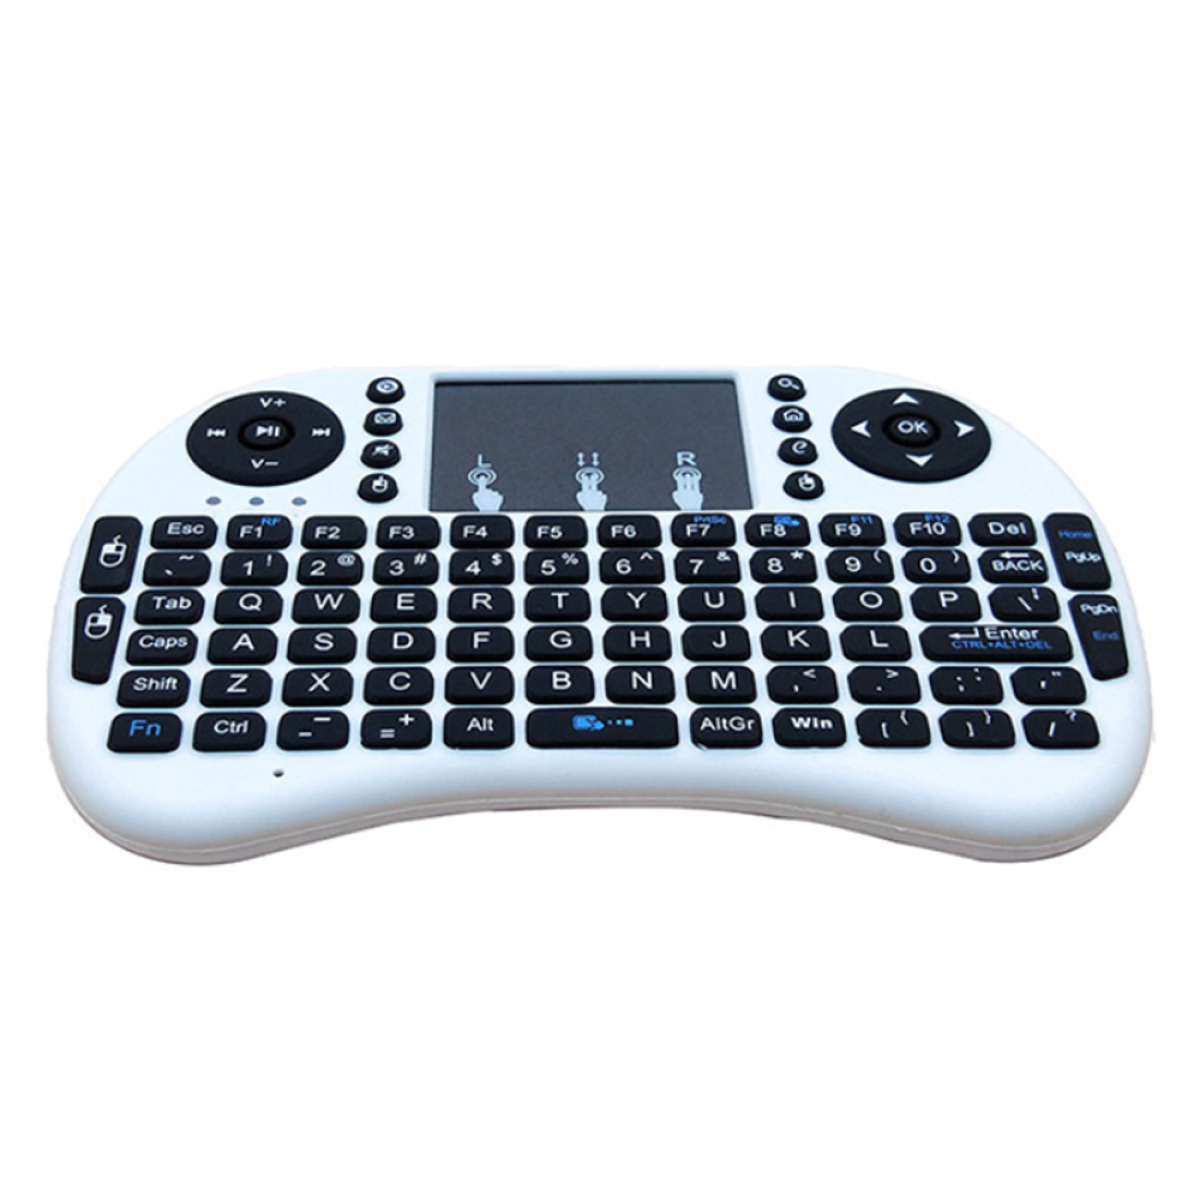 Standard Eingabegerät, COZEVDNT Tastatur,